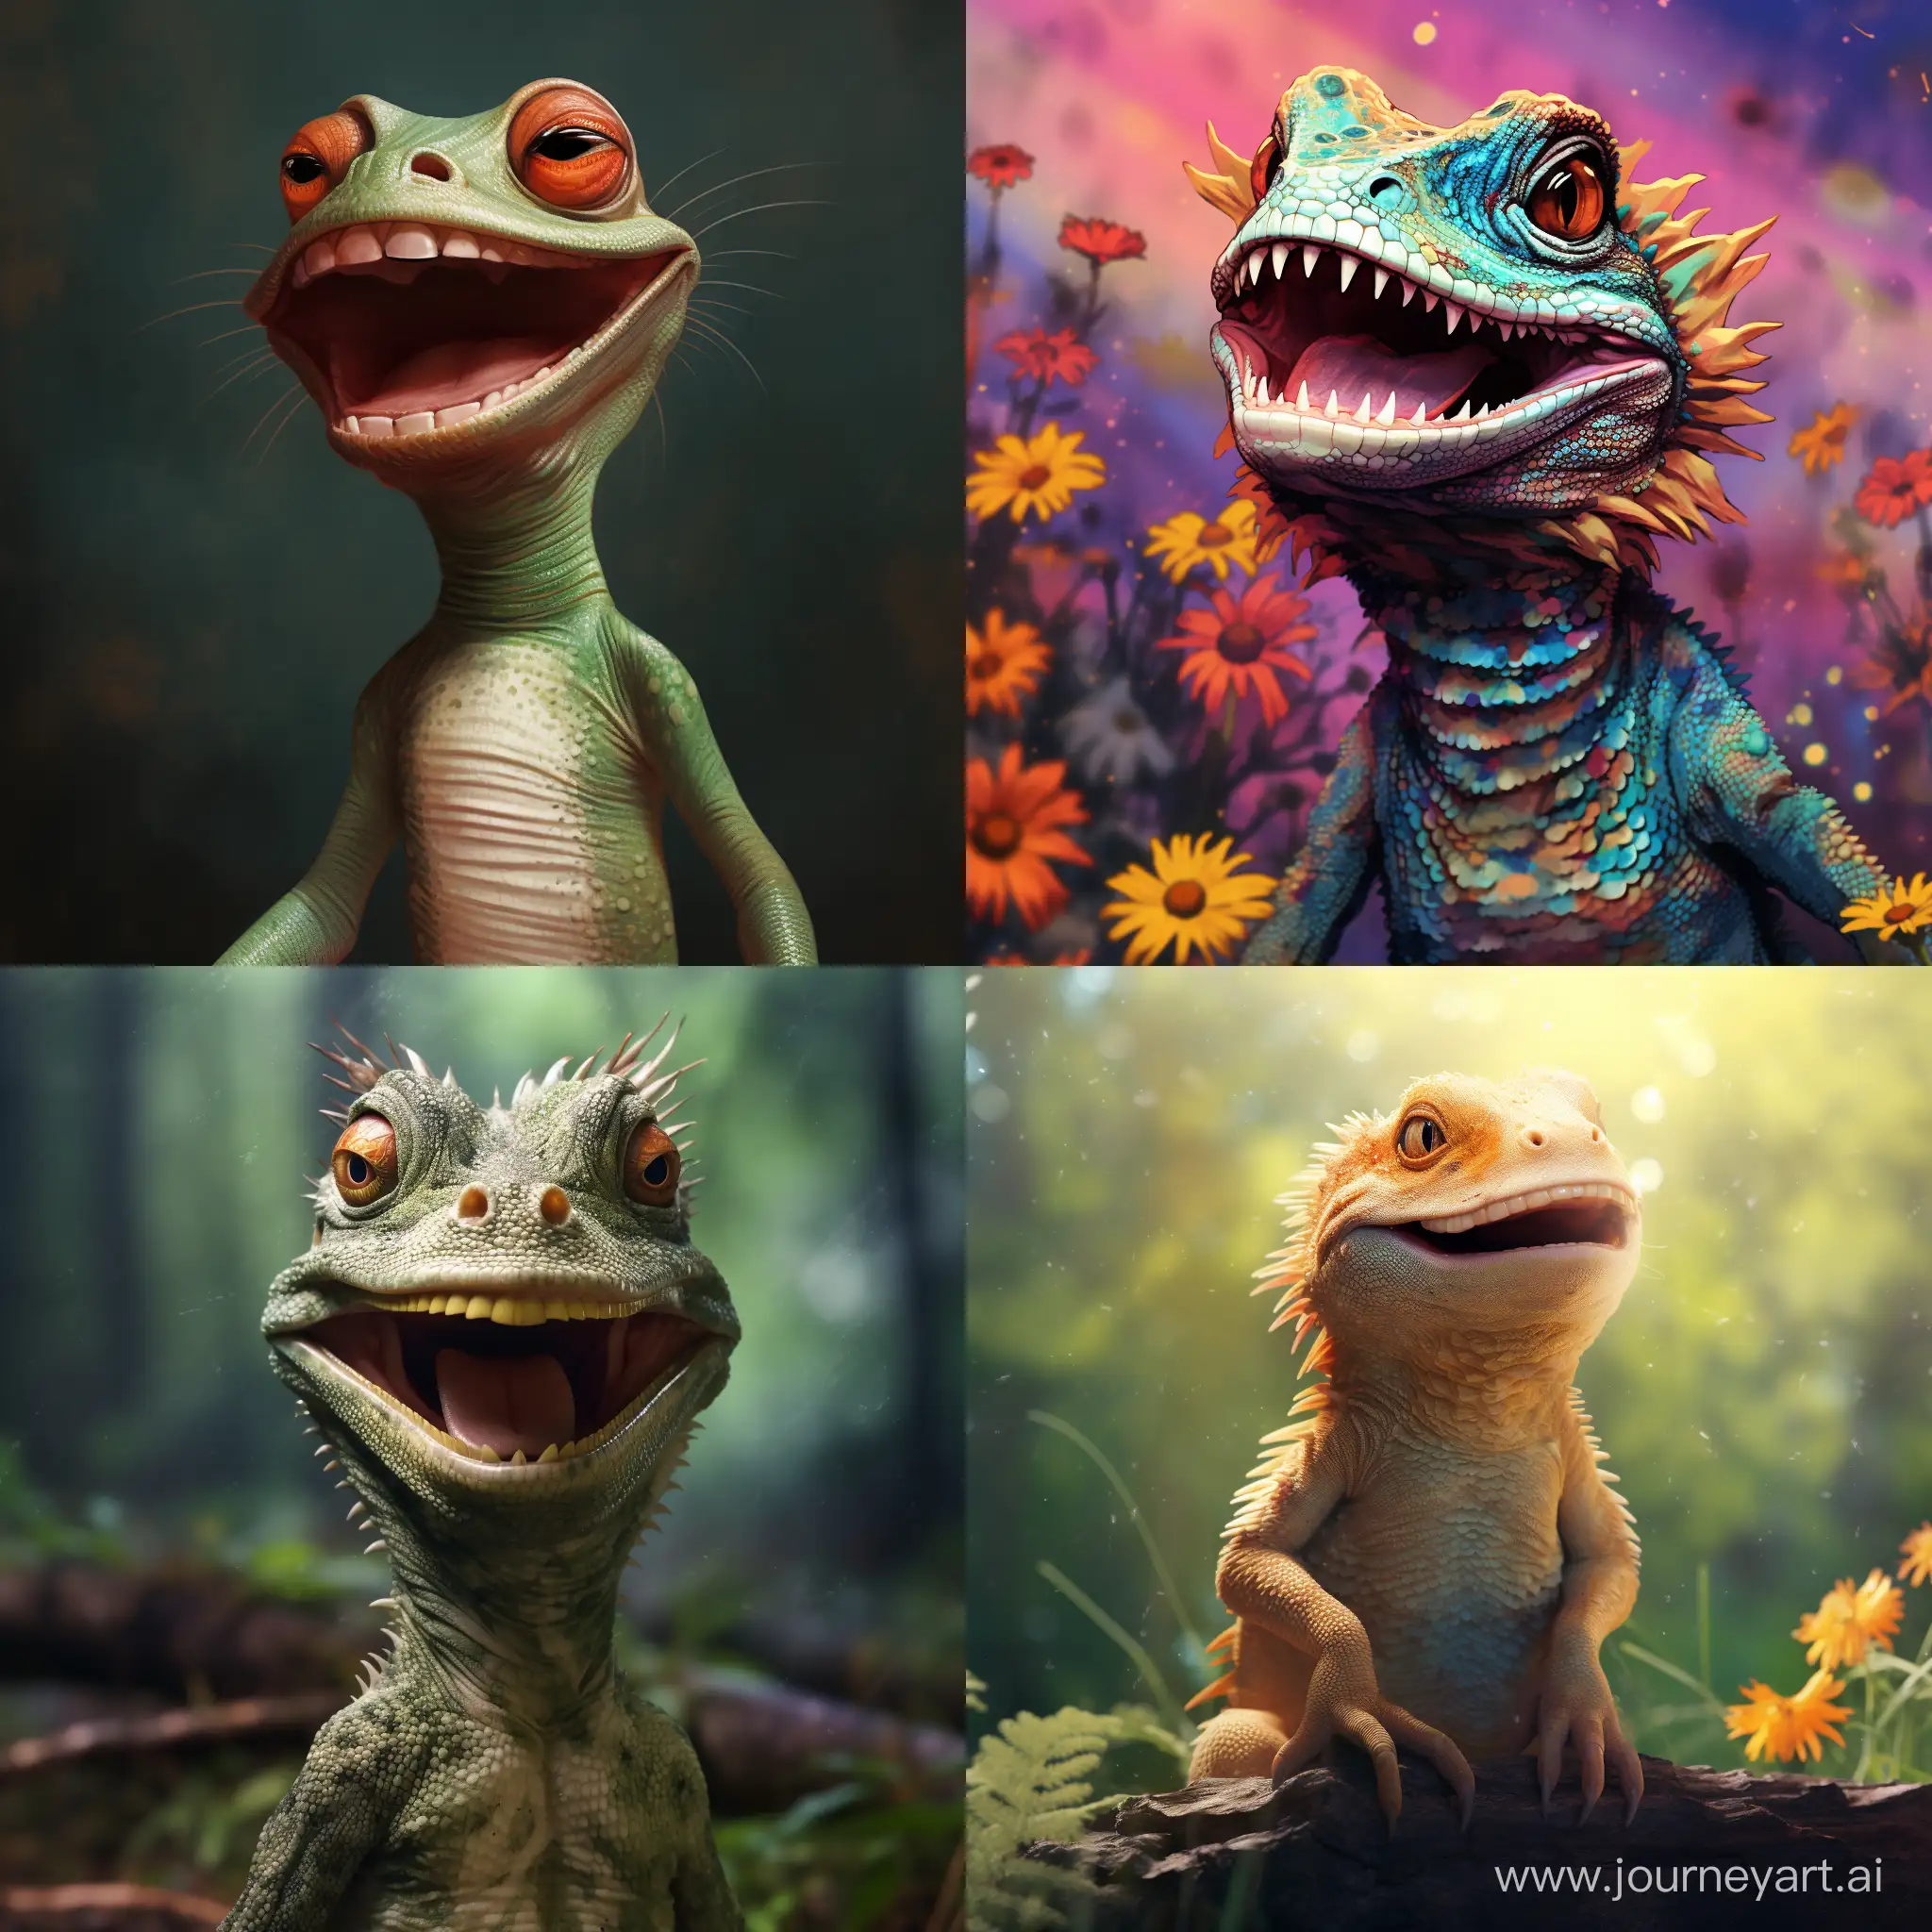 Joyful-Lizard-Delighting-in-Natures-Beauty